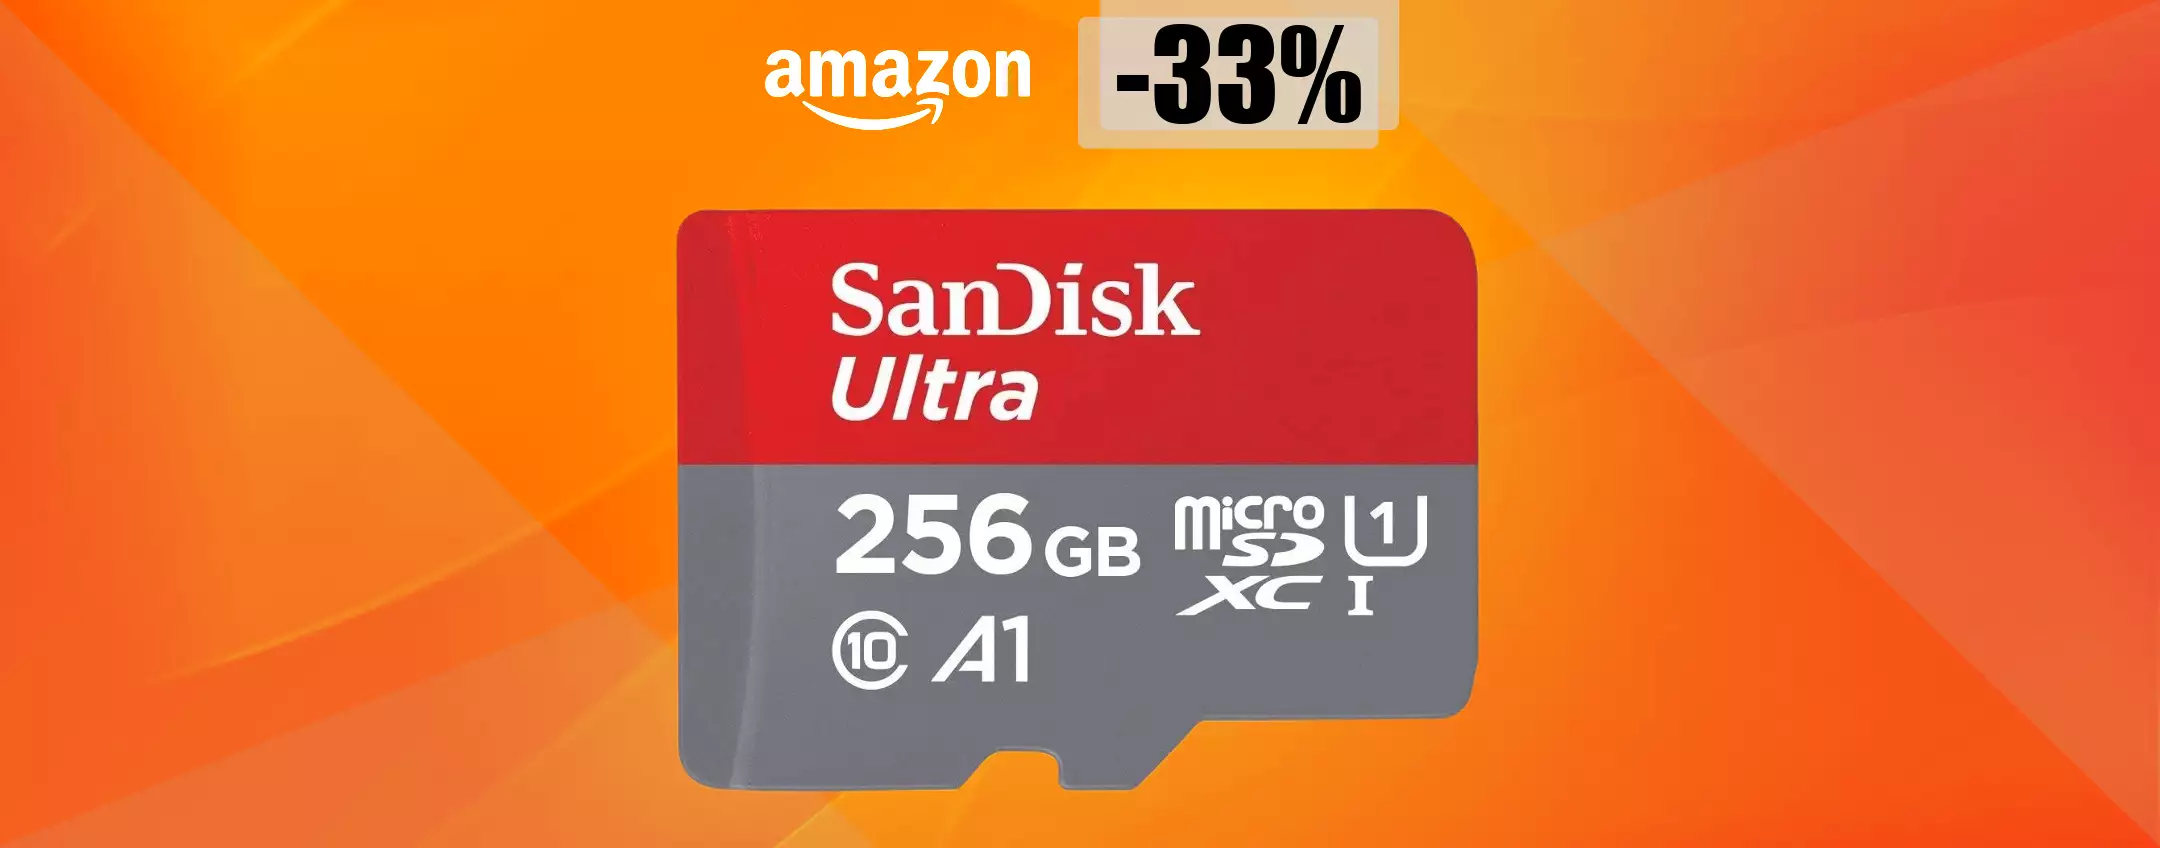 MicroSD SanDisk 256GB, tanta memoria a prezzo STRACCIATO: solo 42€